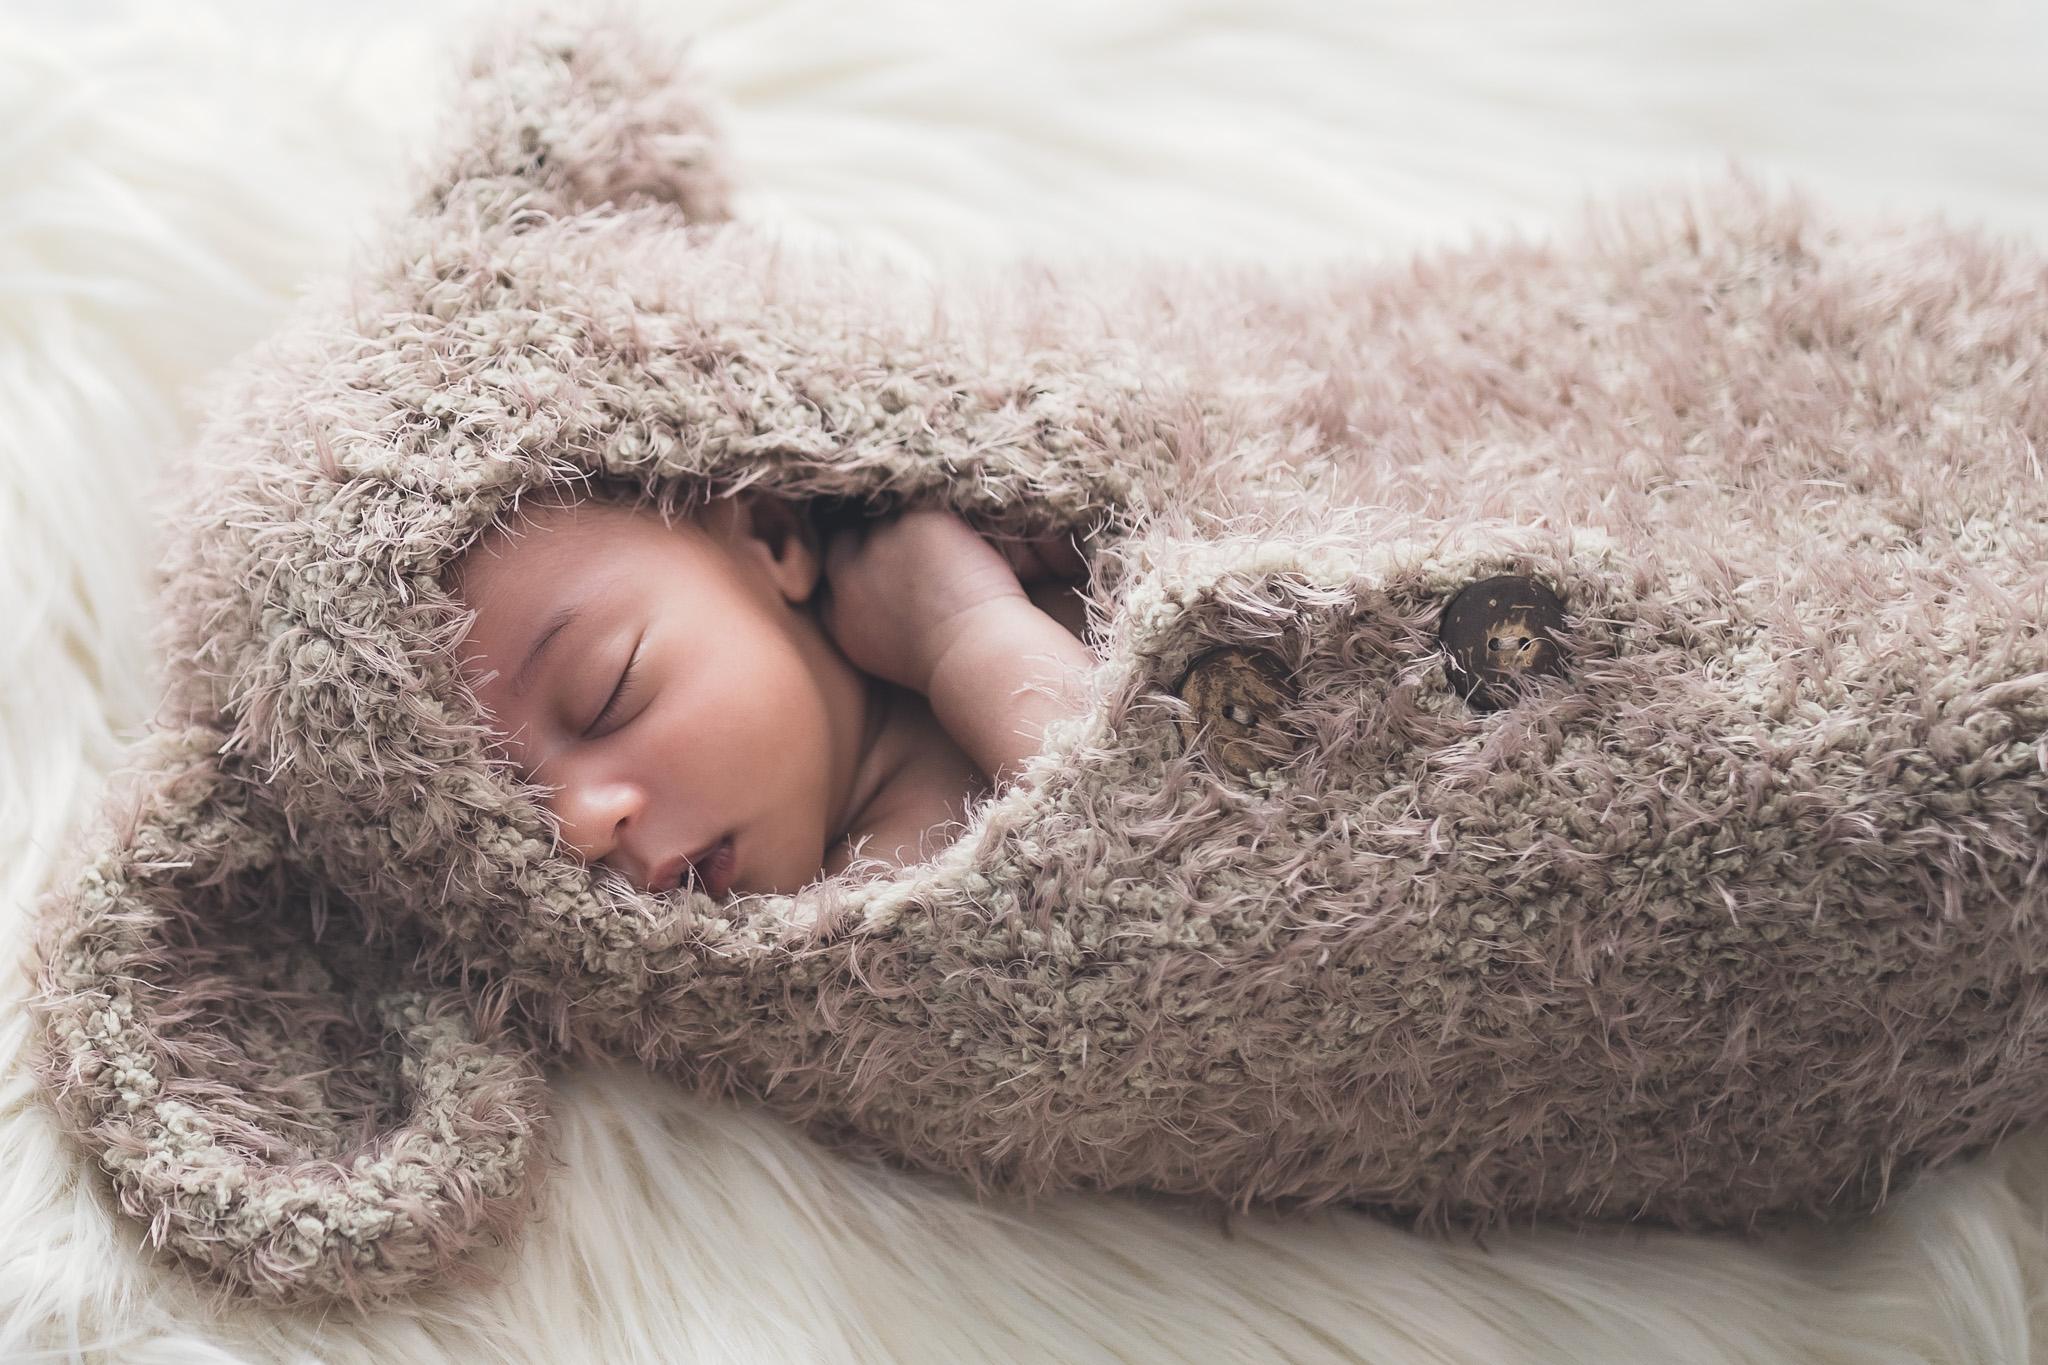 kathia koy photographie - photographe de naissance, bébé, nouveau-né, enfant, accessoires